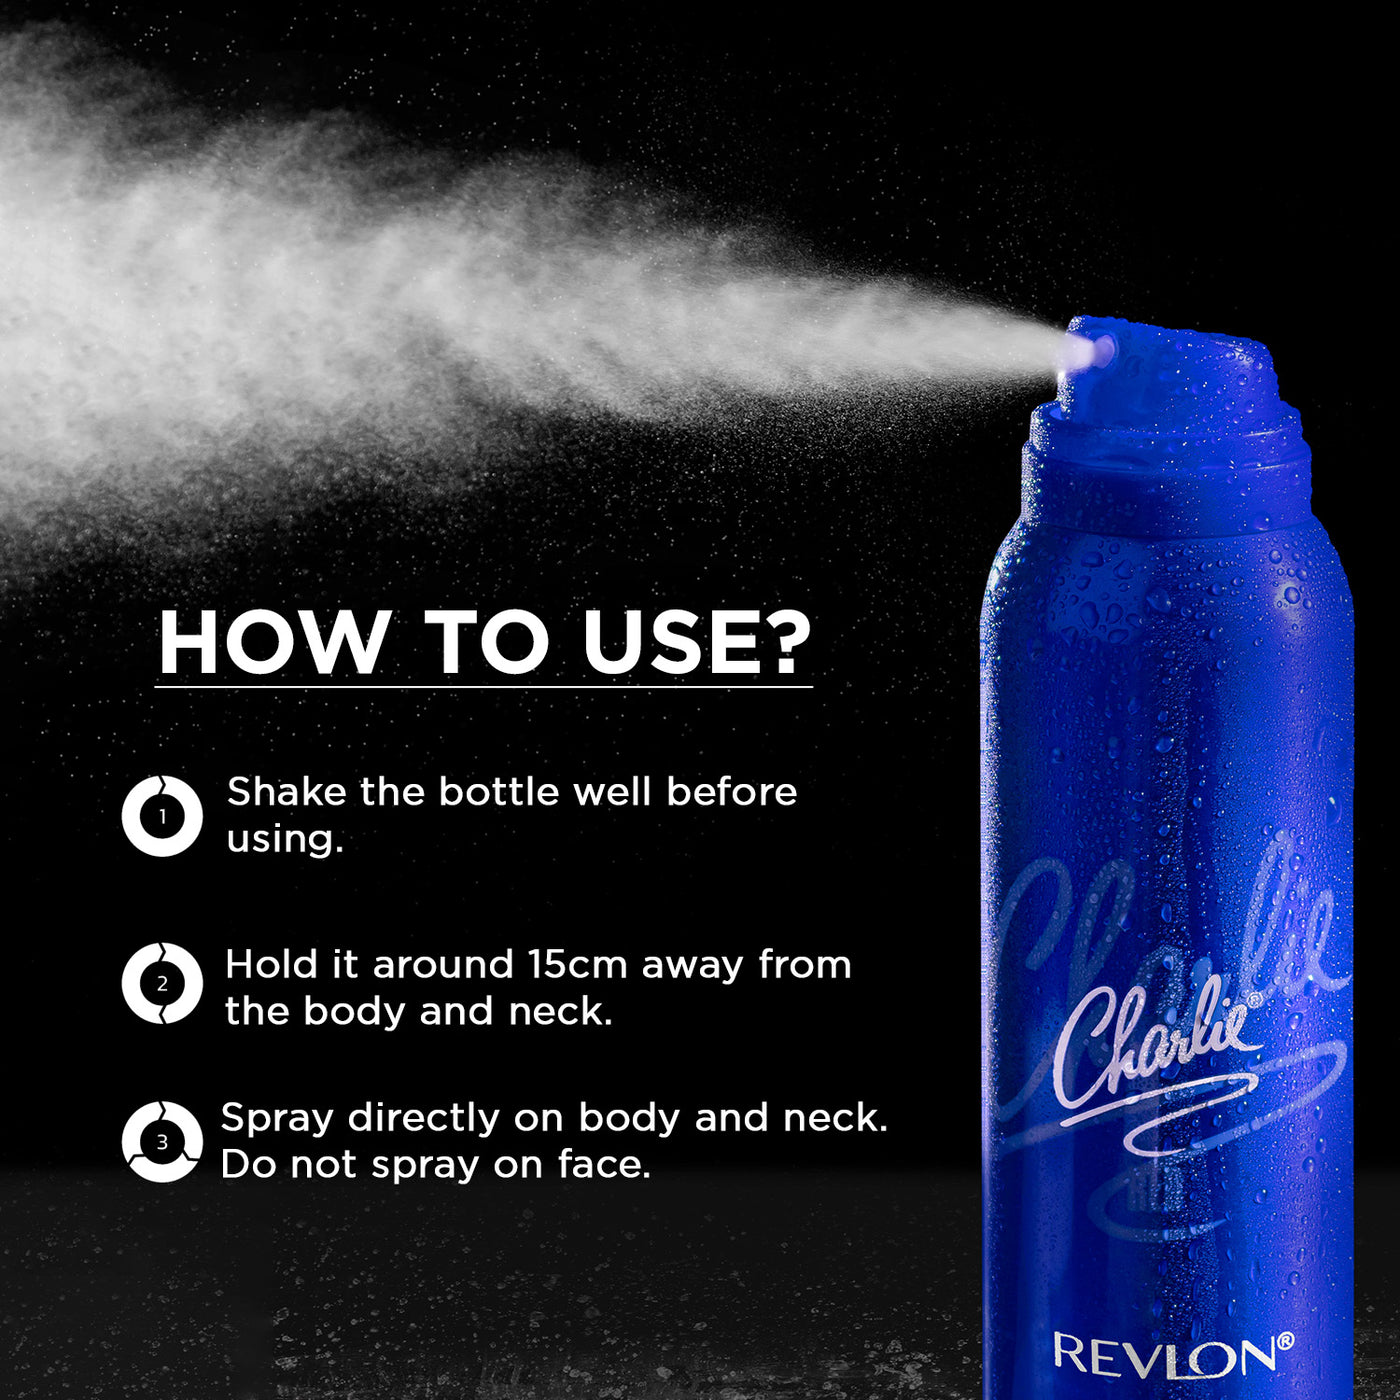 Buy Charlie Blue Perfumed Body Spray for Women Online - Revlon